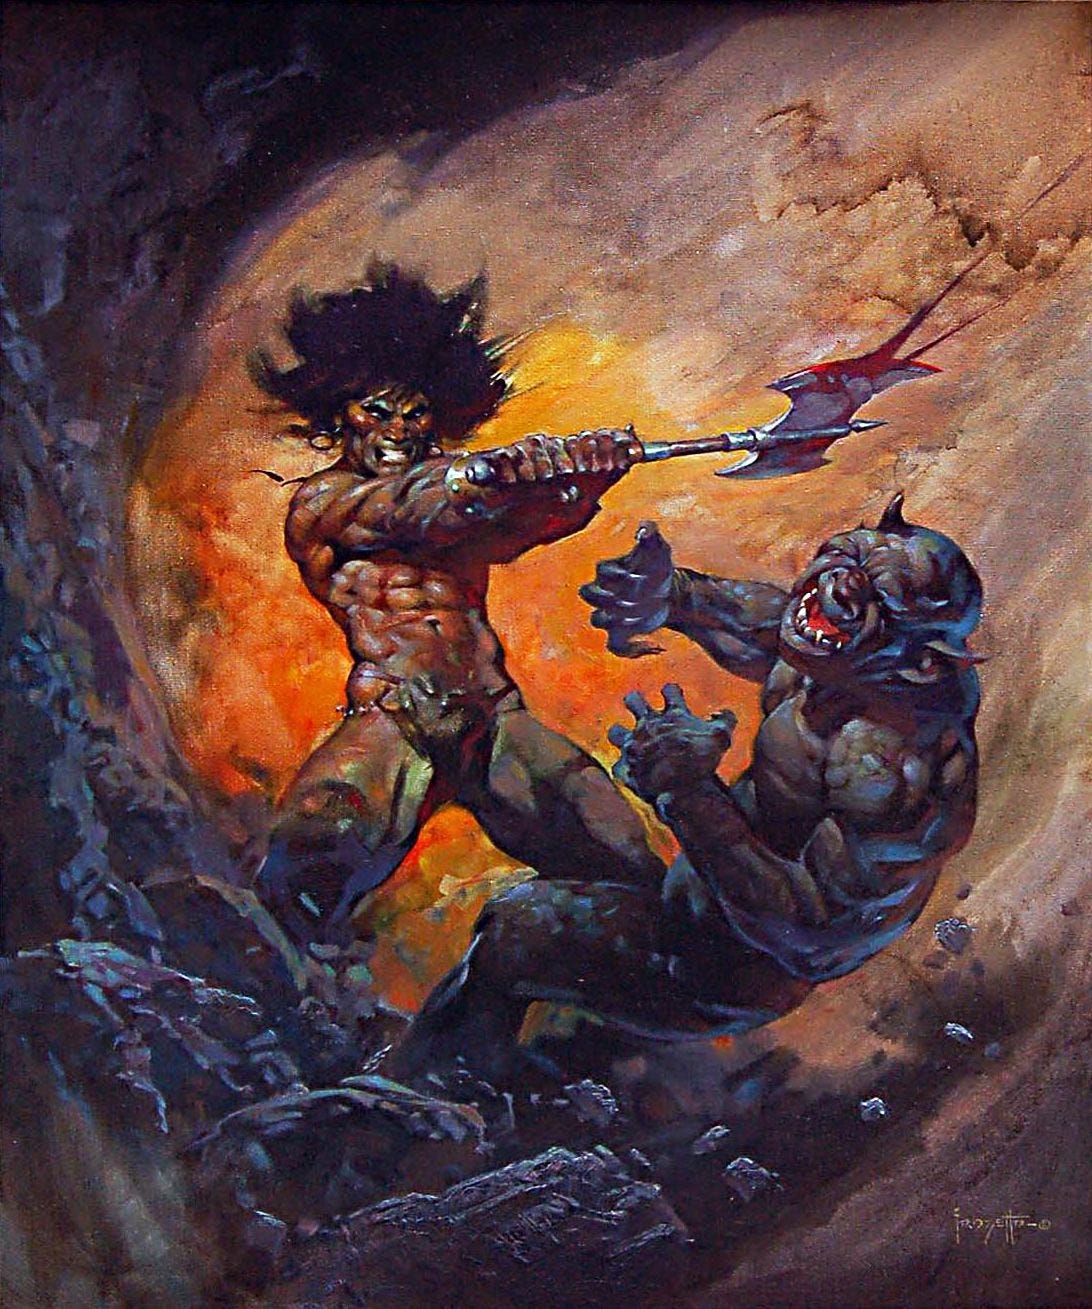 Frazetta-Conan the Warrior | Frank frazetta art, Frazetta art, Frank ...